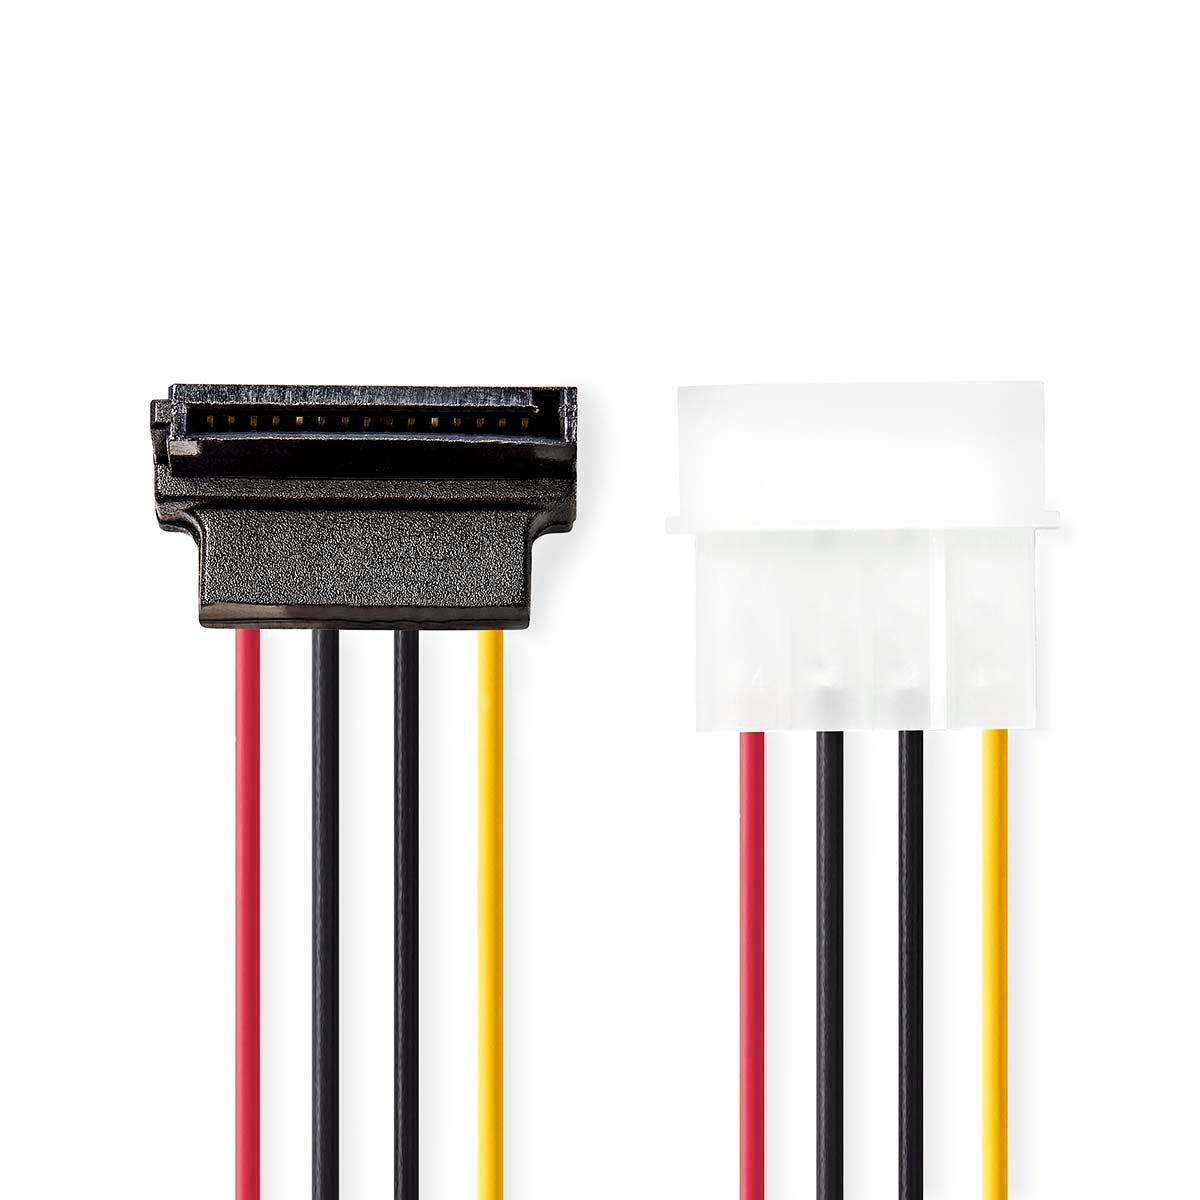 Interne Stromkabel | Molex Stecker | SATA 15-Pin-Buchse | Vergoldet | 0.15 m | Rund | PVC | Mehrfarbig | Umschlag